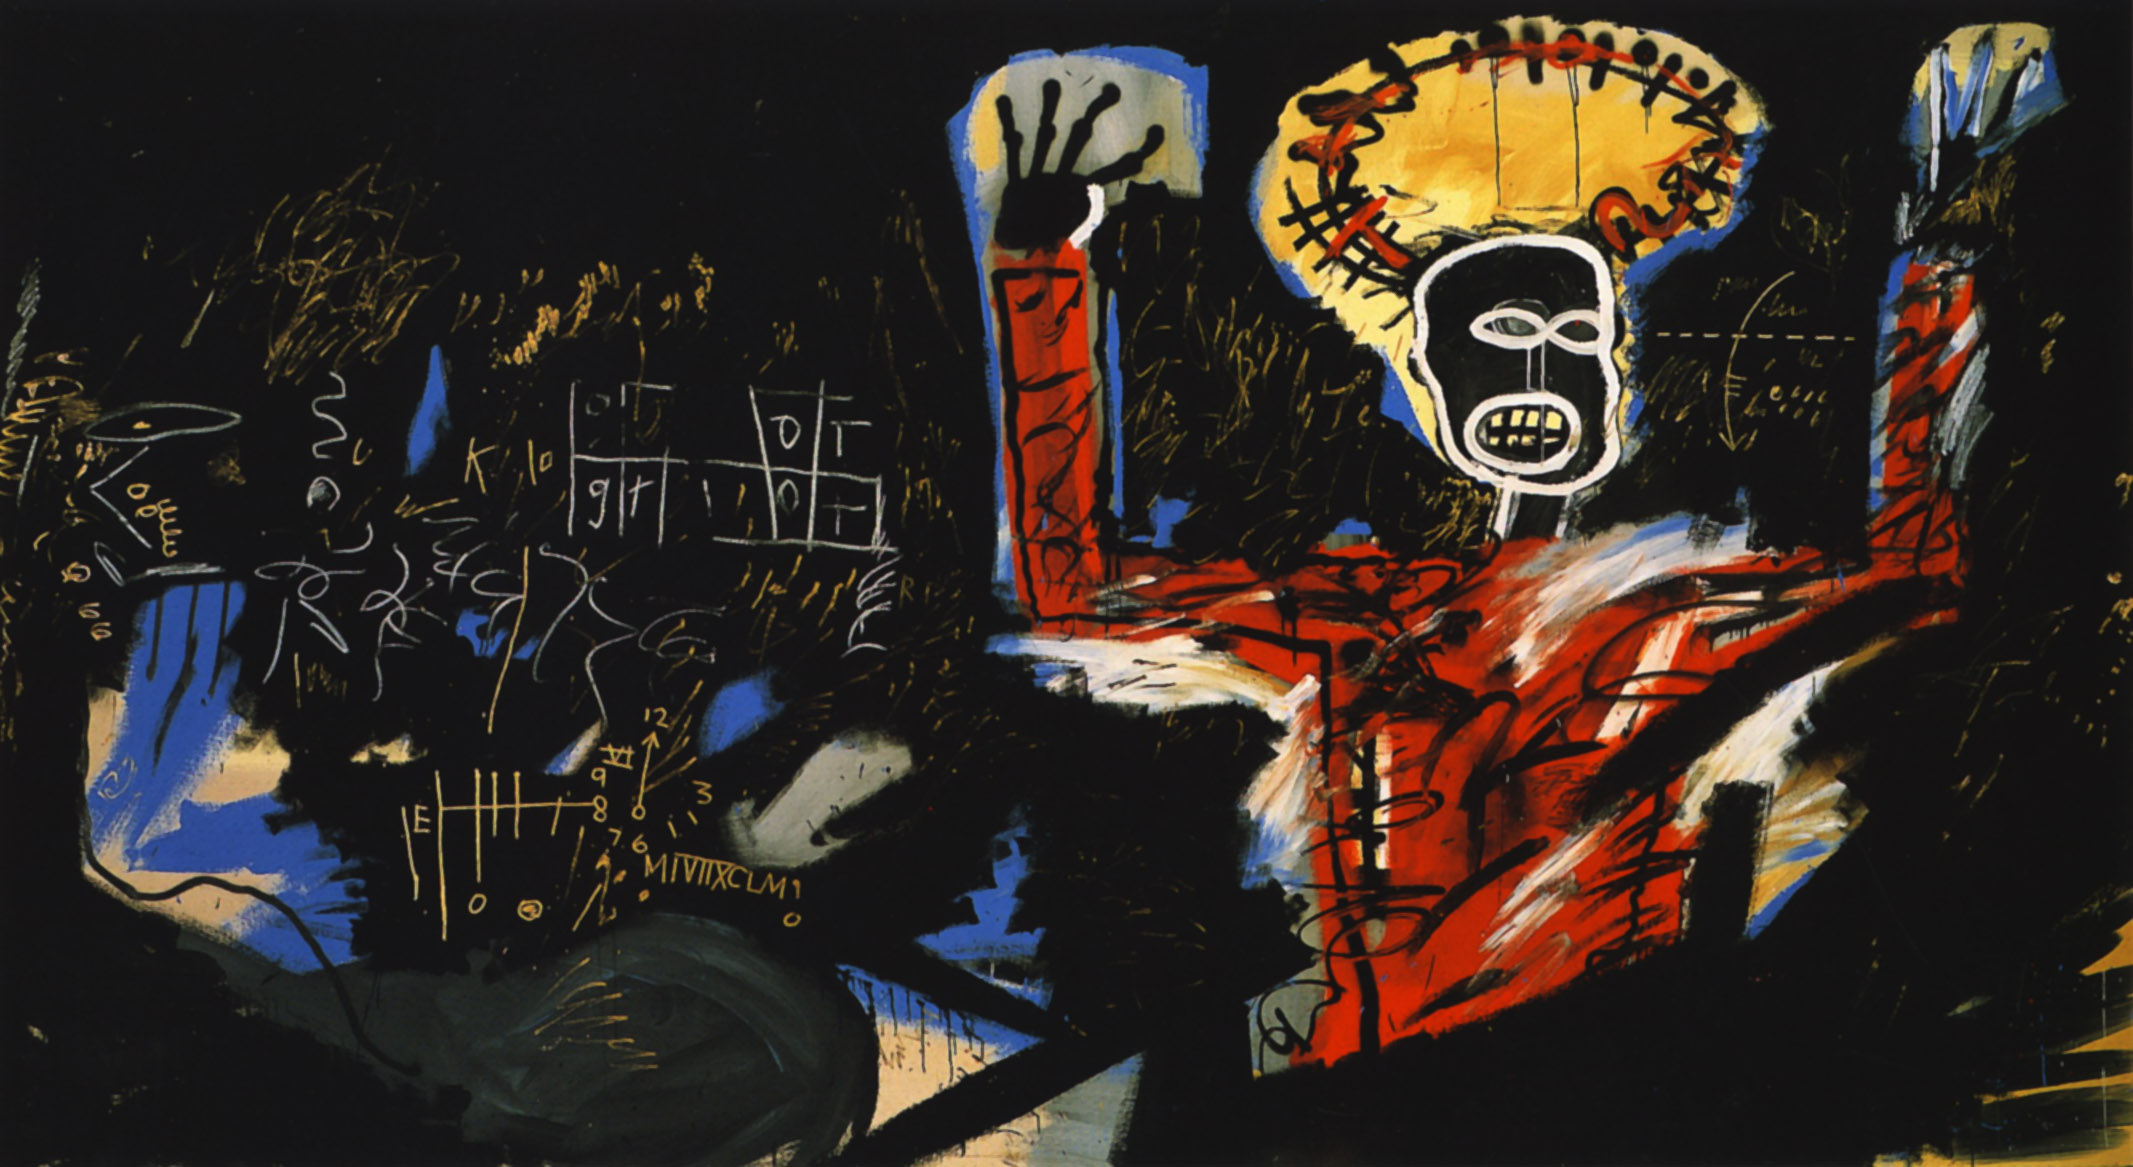 Profit I by Jean-Michel Basquiat - 1982 - 220 x 400 cm collection privée